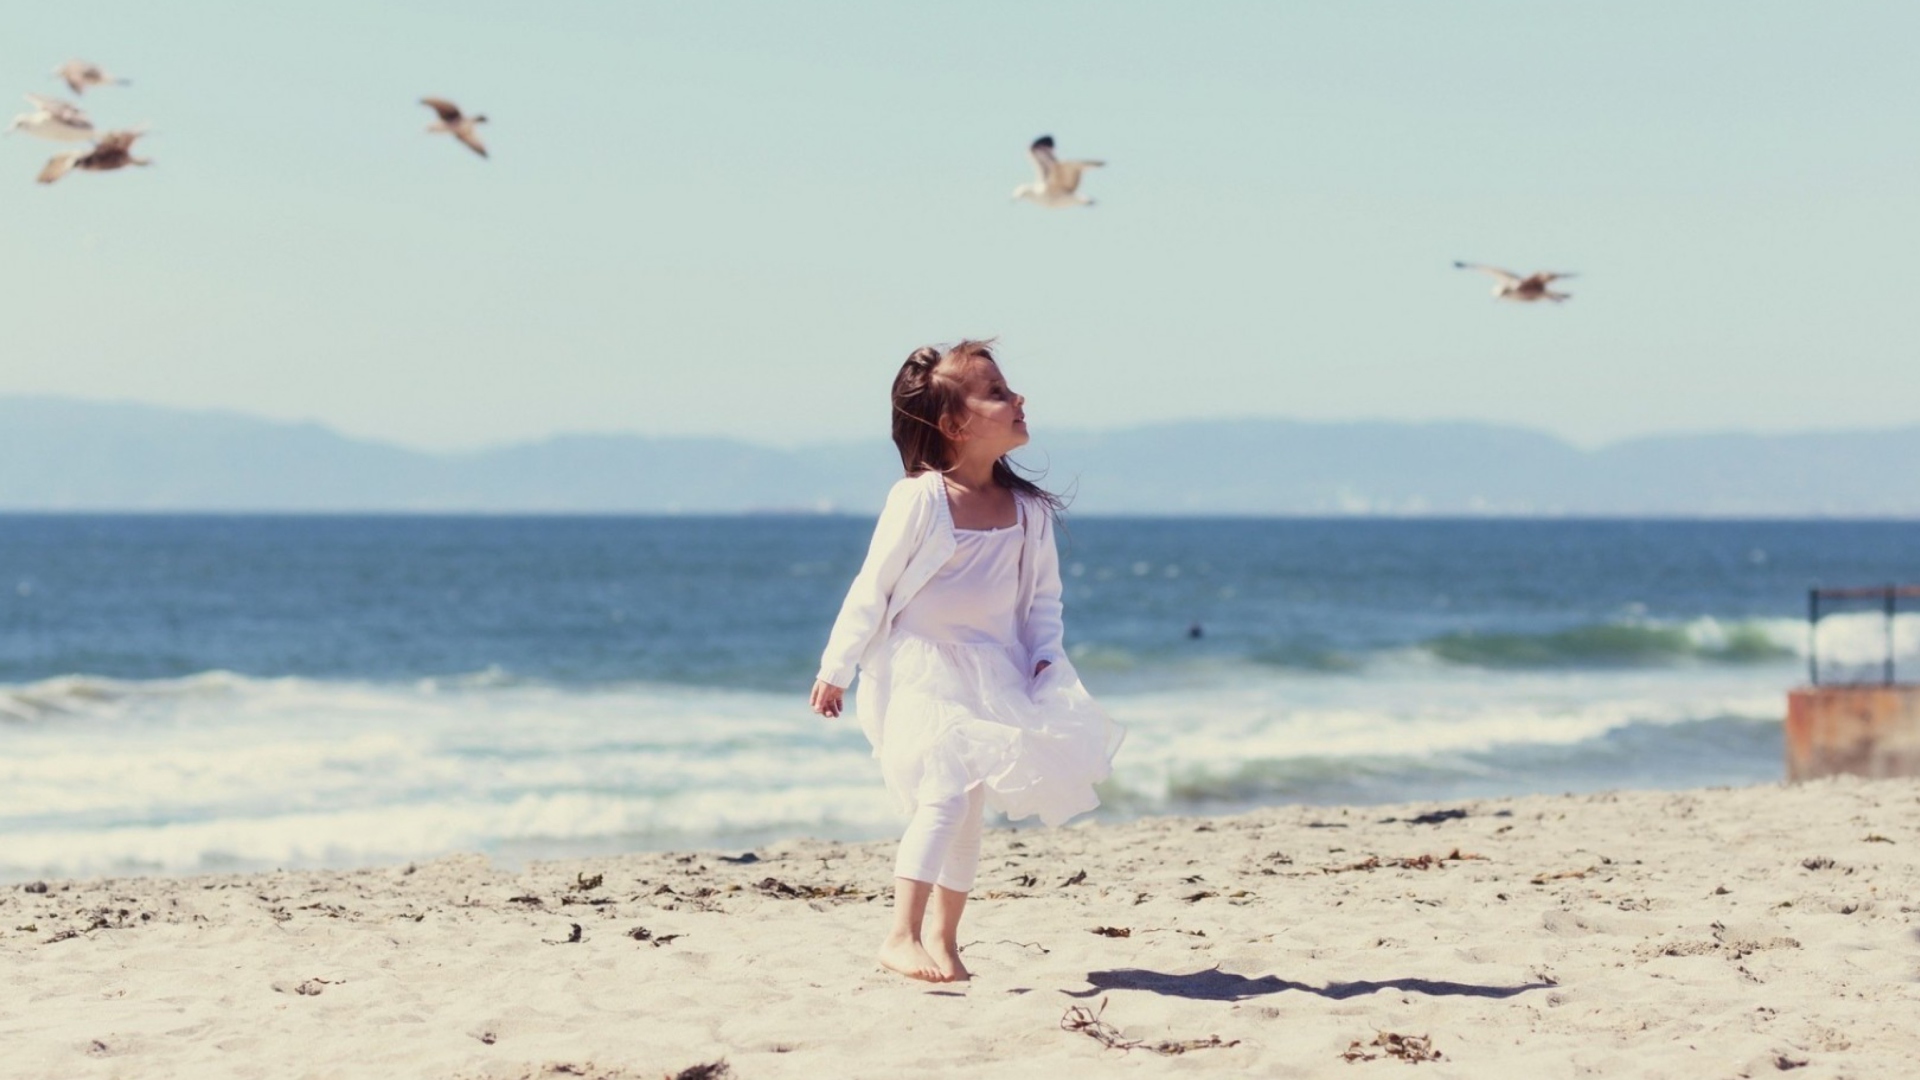 Das Little Girl And Seagulls On Beach Wallpaper 1920x1080